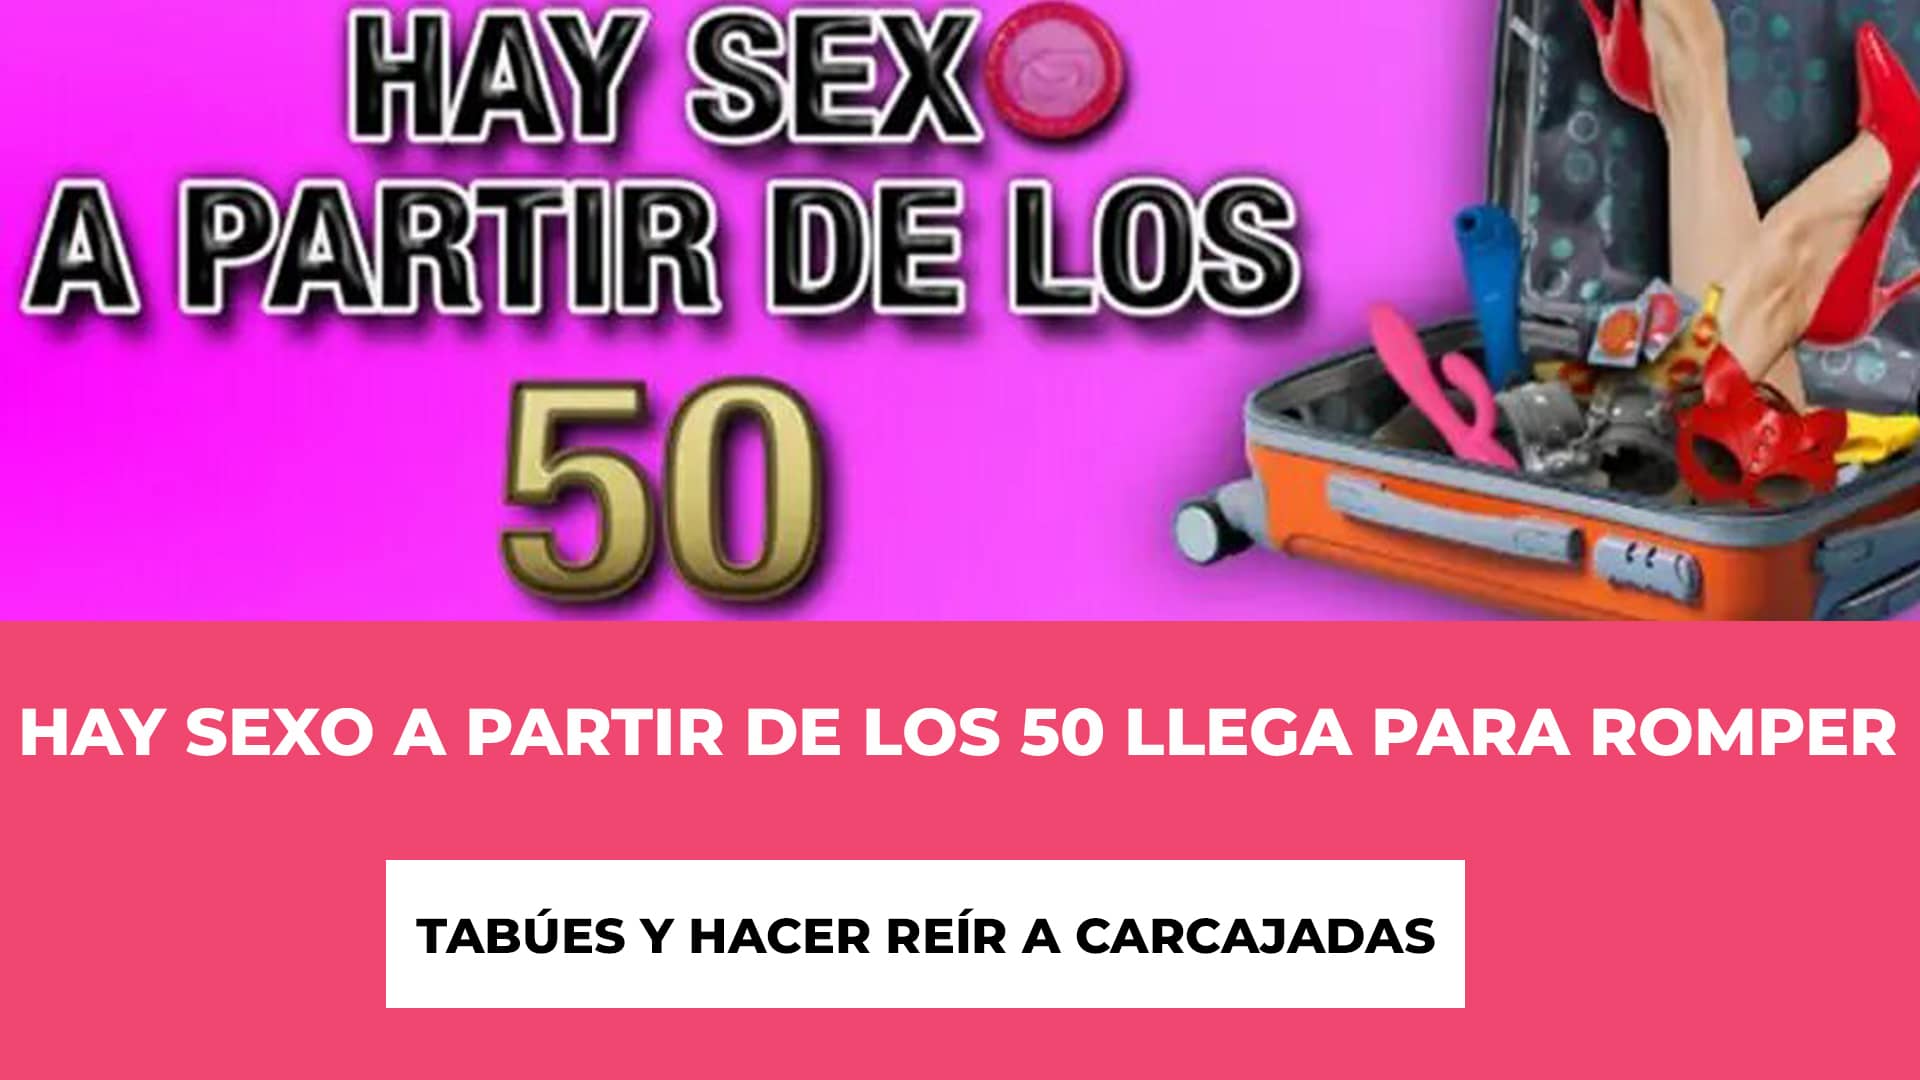 Descubre info de la comedia Hay sexo a partir de los 50 en Teatro Arlequín - Madrid 2023 - Comedia Llena de Diversión - Teatro Arlequín - Reflexión Divertida